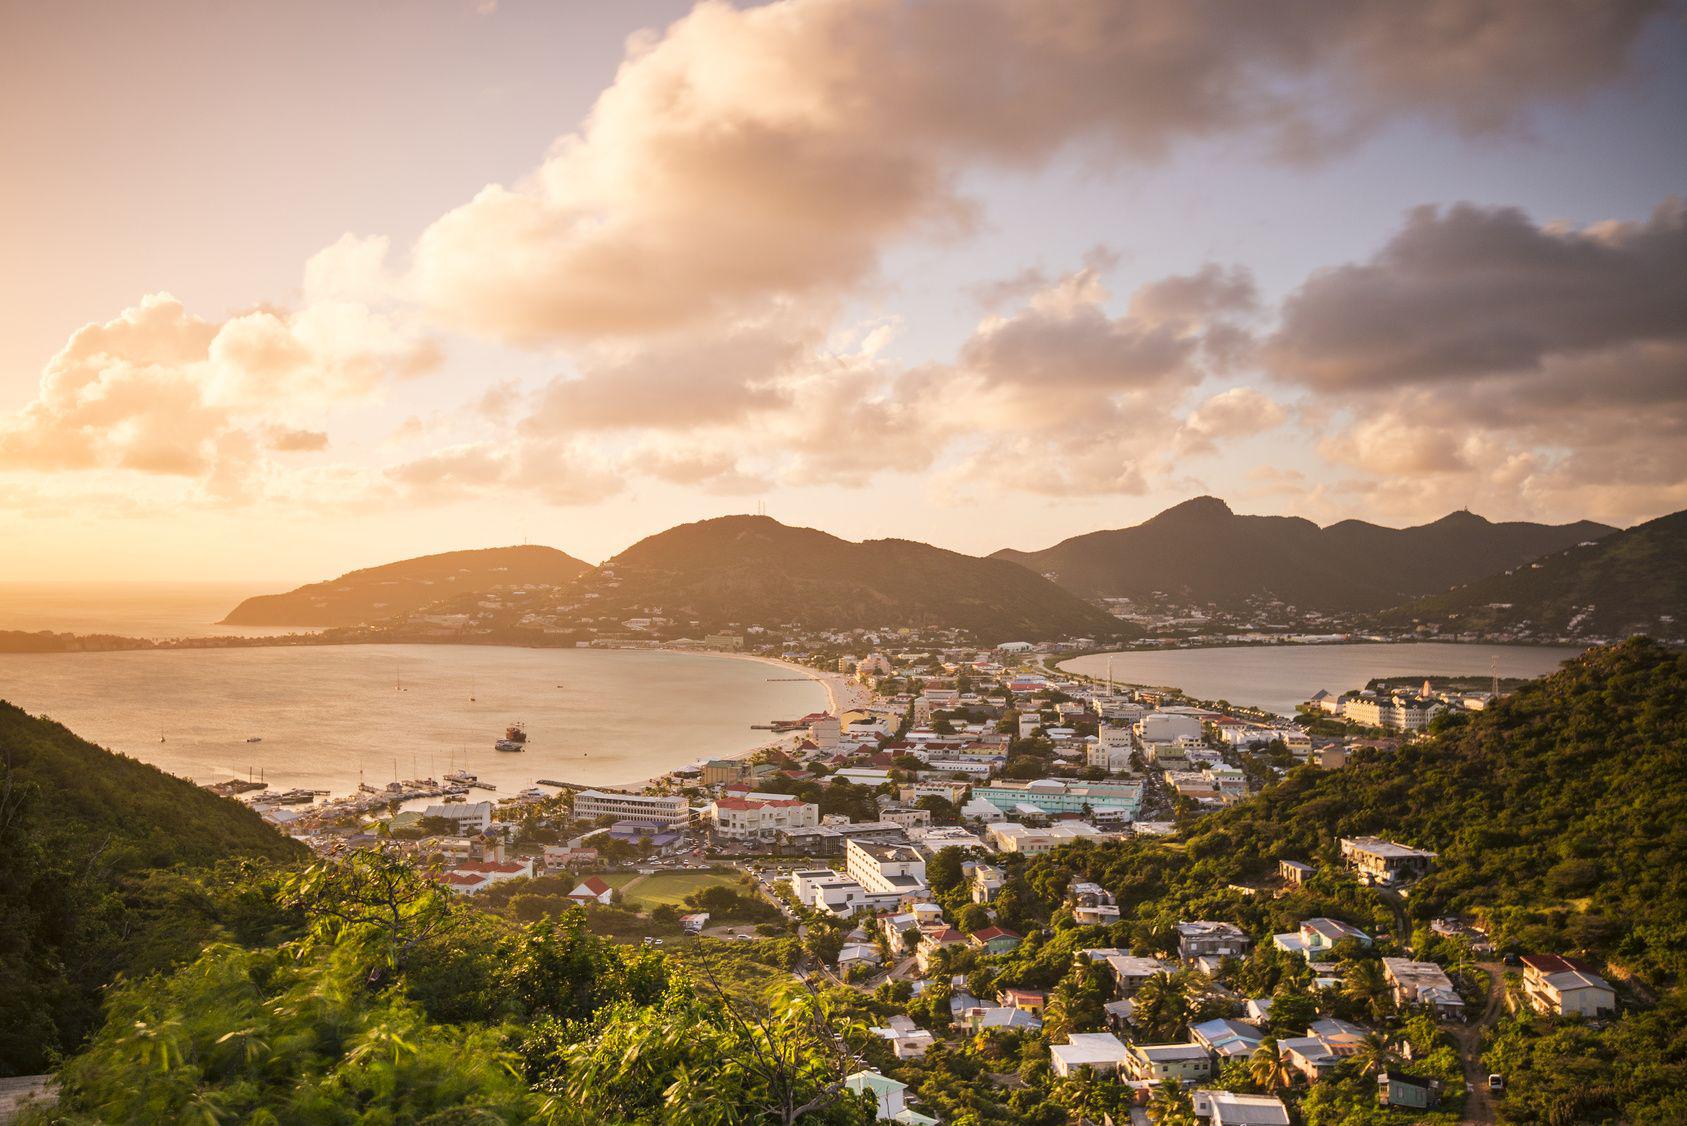 Piccole Antille - Saint Martin o Sint Maarten è situata a circa 240 km di distanza da Porto Rico. Un'isola e due bandiere: particolarità di questo incantevole luogo è che al suo interno convivono in armonia due territori, francese e olandese. L'isola è considerata una delle più belle dei Caraibi orientali. SeanPavonePhoto - Fotolia